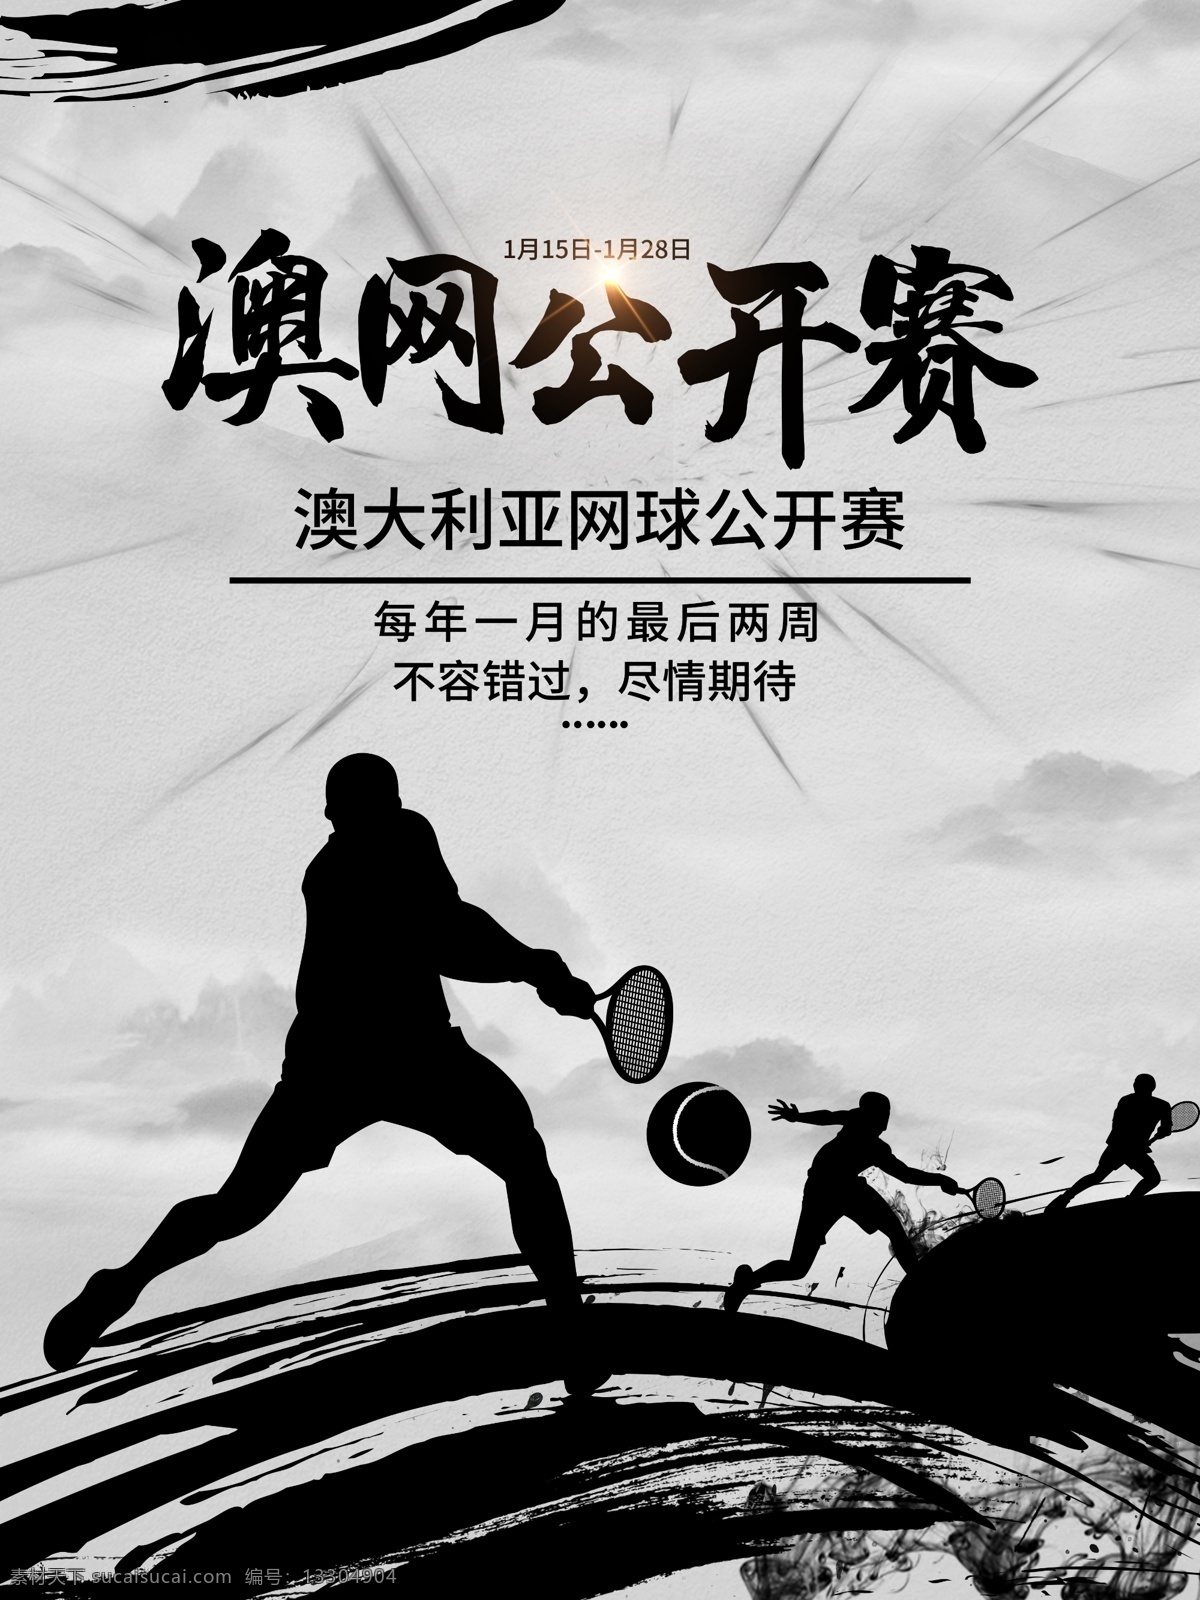 中国 风 水墨 澳网 公开赛 宣传海报 澳网公开赛 比赛 打网球 海报 开幕 水墨风 运动 中国风